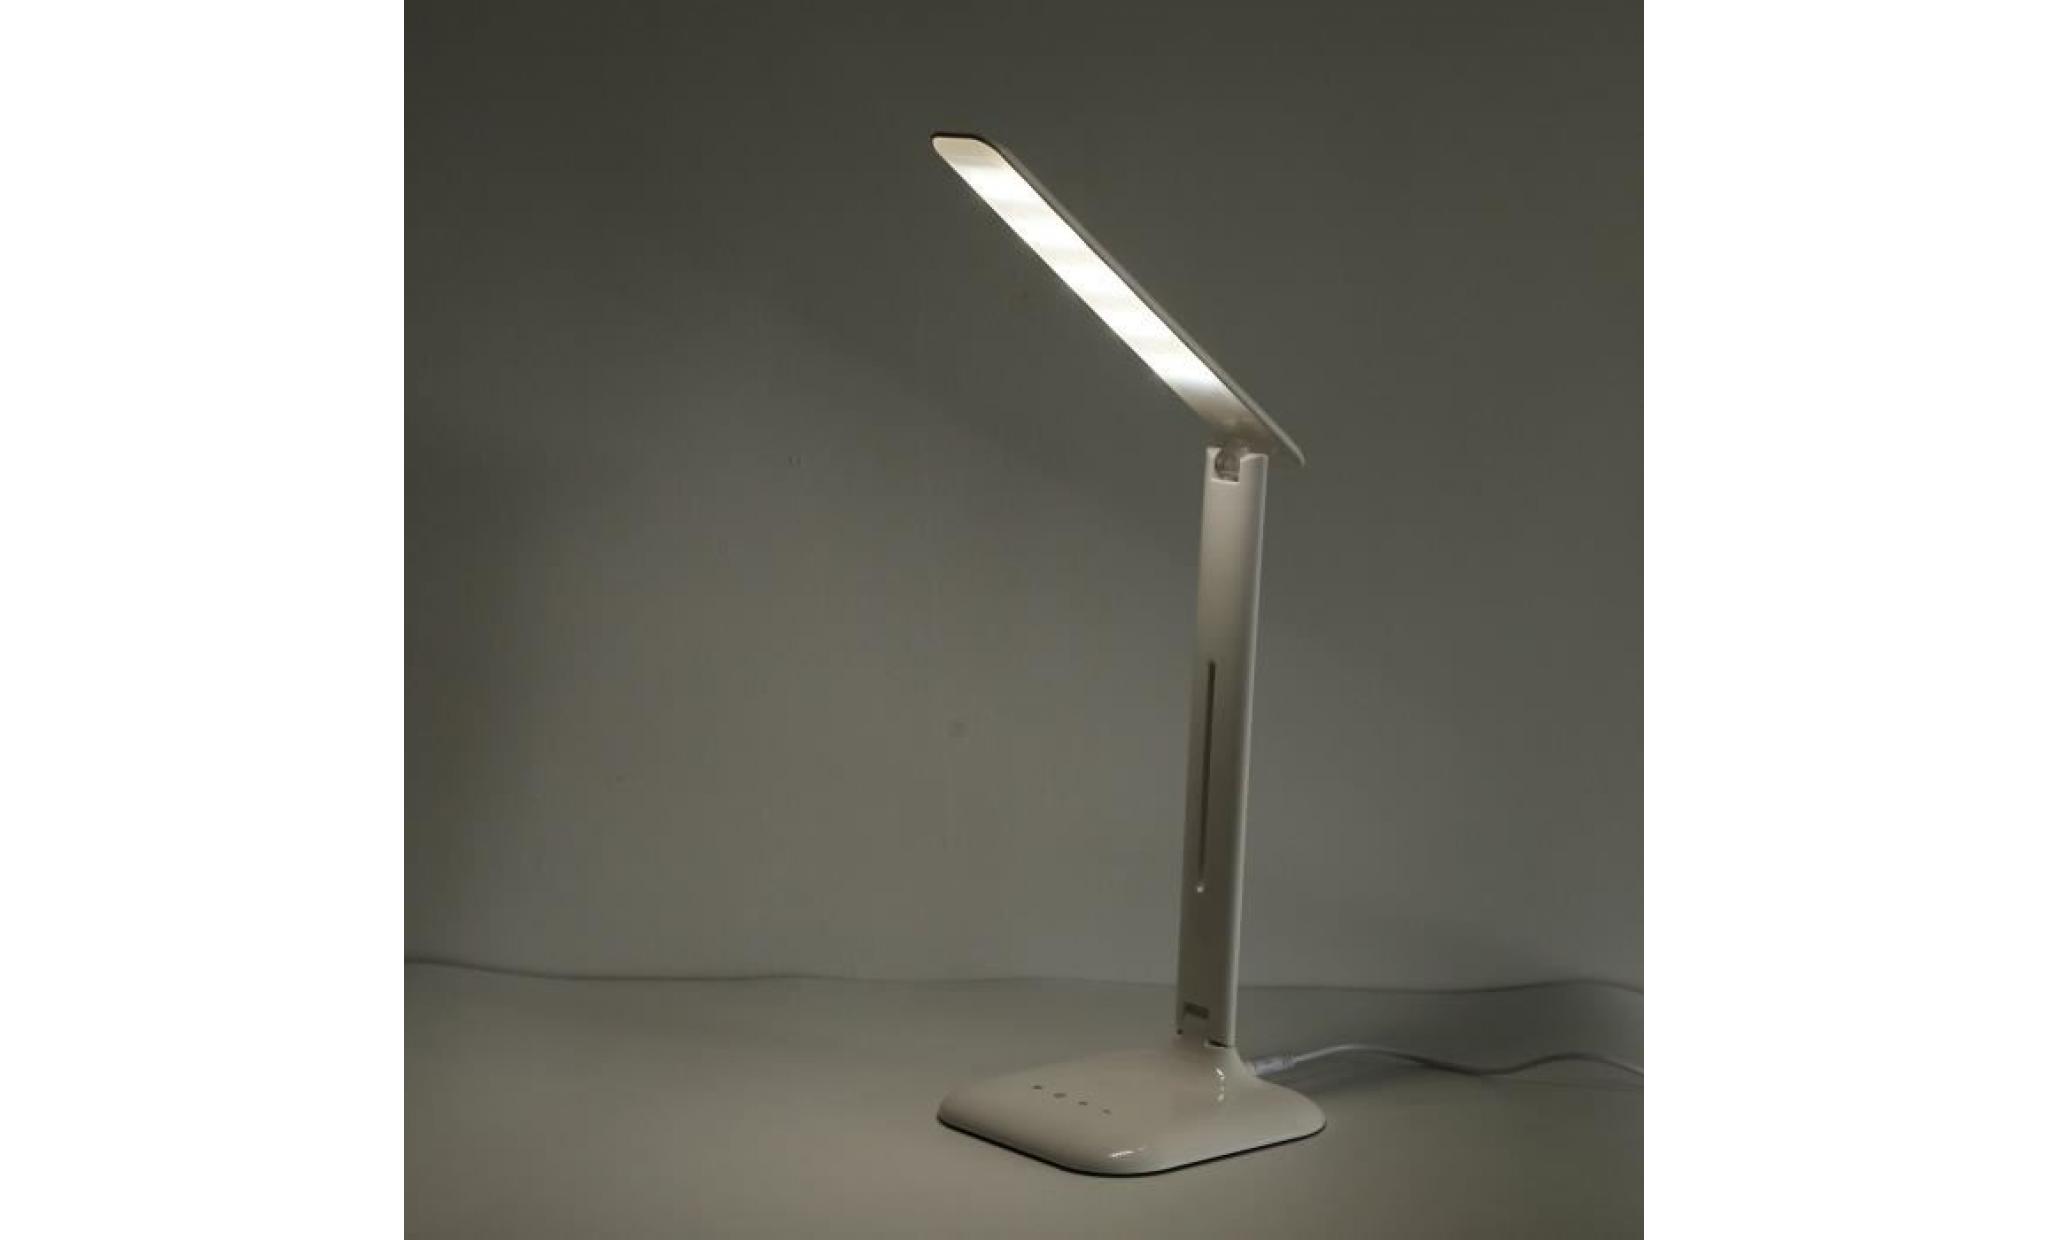 Lampe de bureau Lampe de table Lampe de chevet LED 7W,4 modes (étude, lecteure, sommeil, relax), 7W 600LM + Adaptateur pas cher